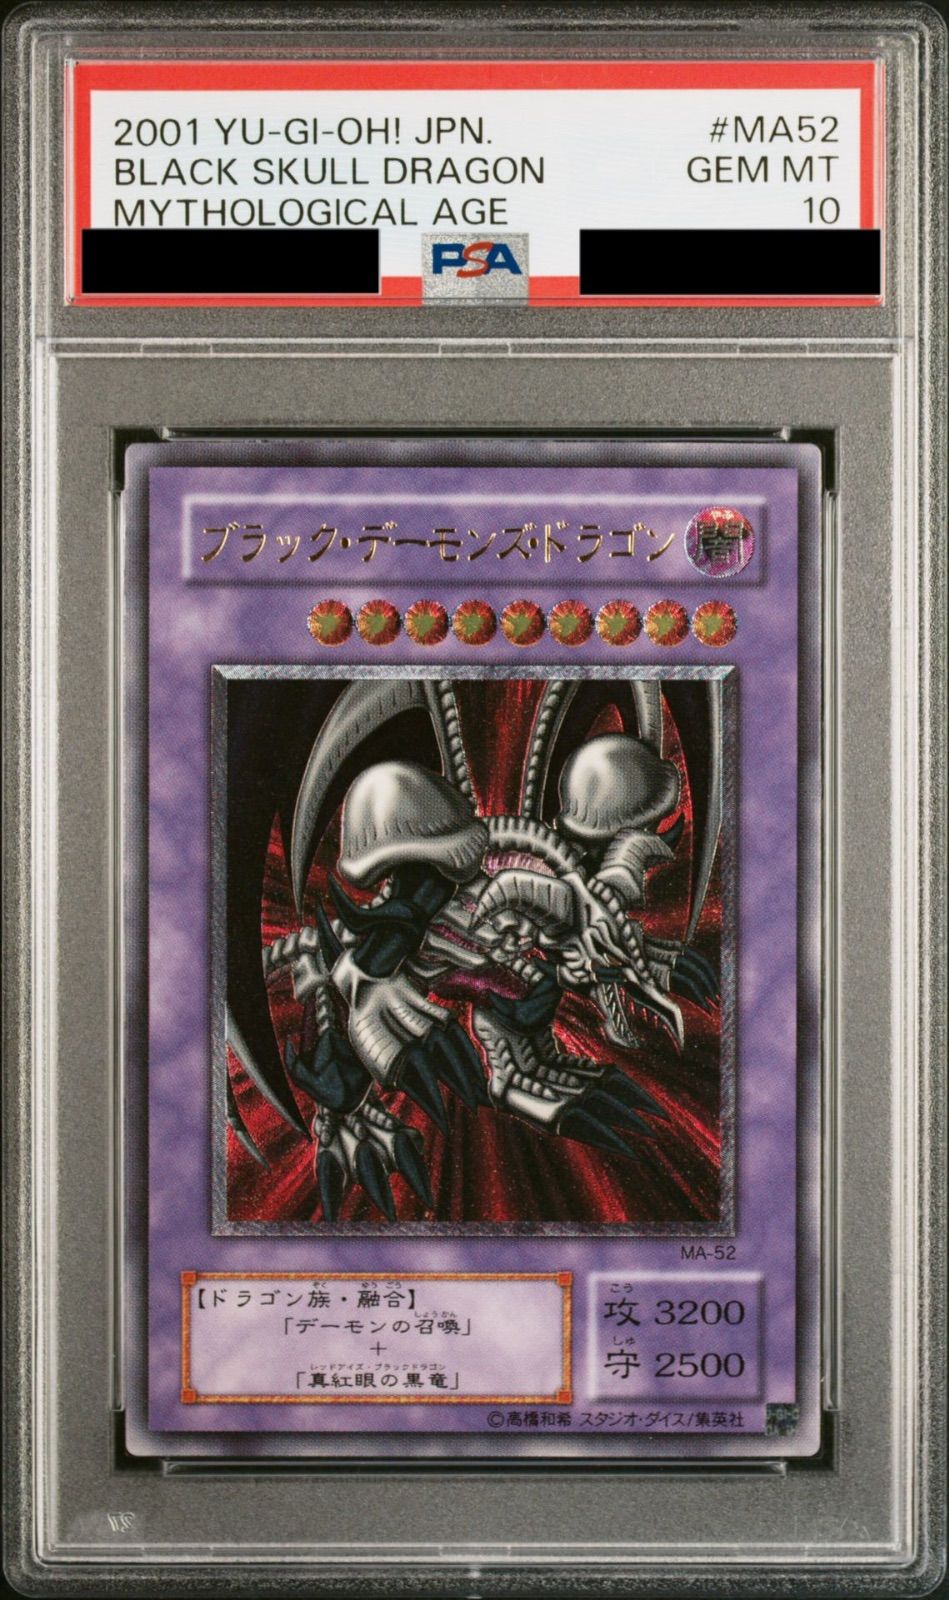 遊戯王 ブラック・デーモンズ・ドラゴン レリーフ PSA10トレーディングカード